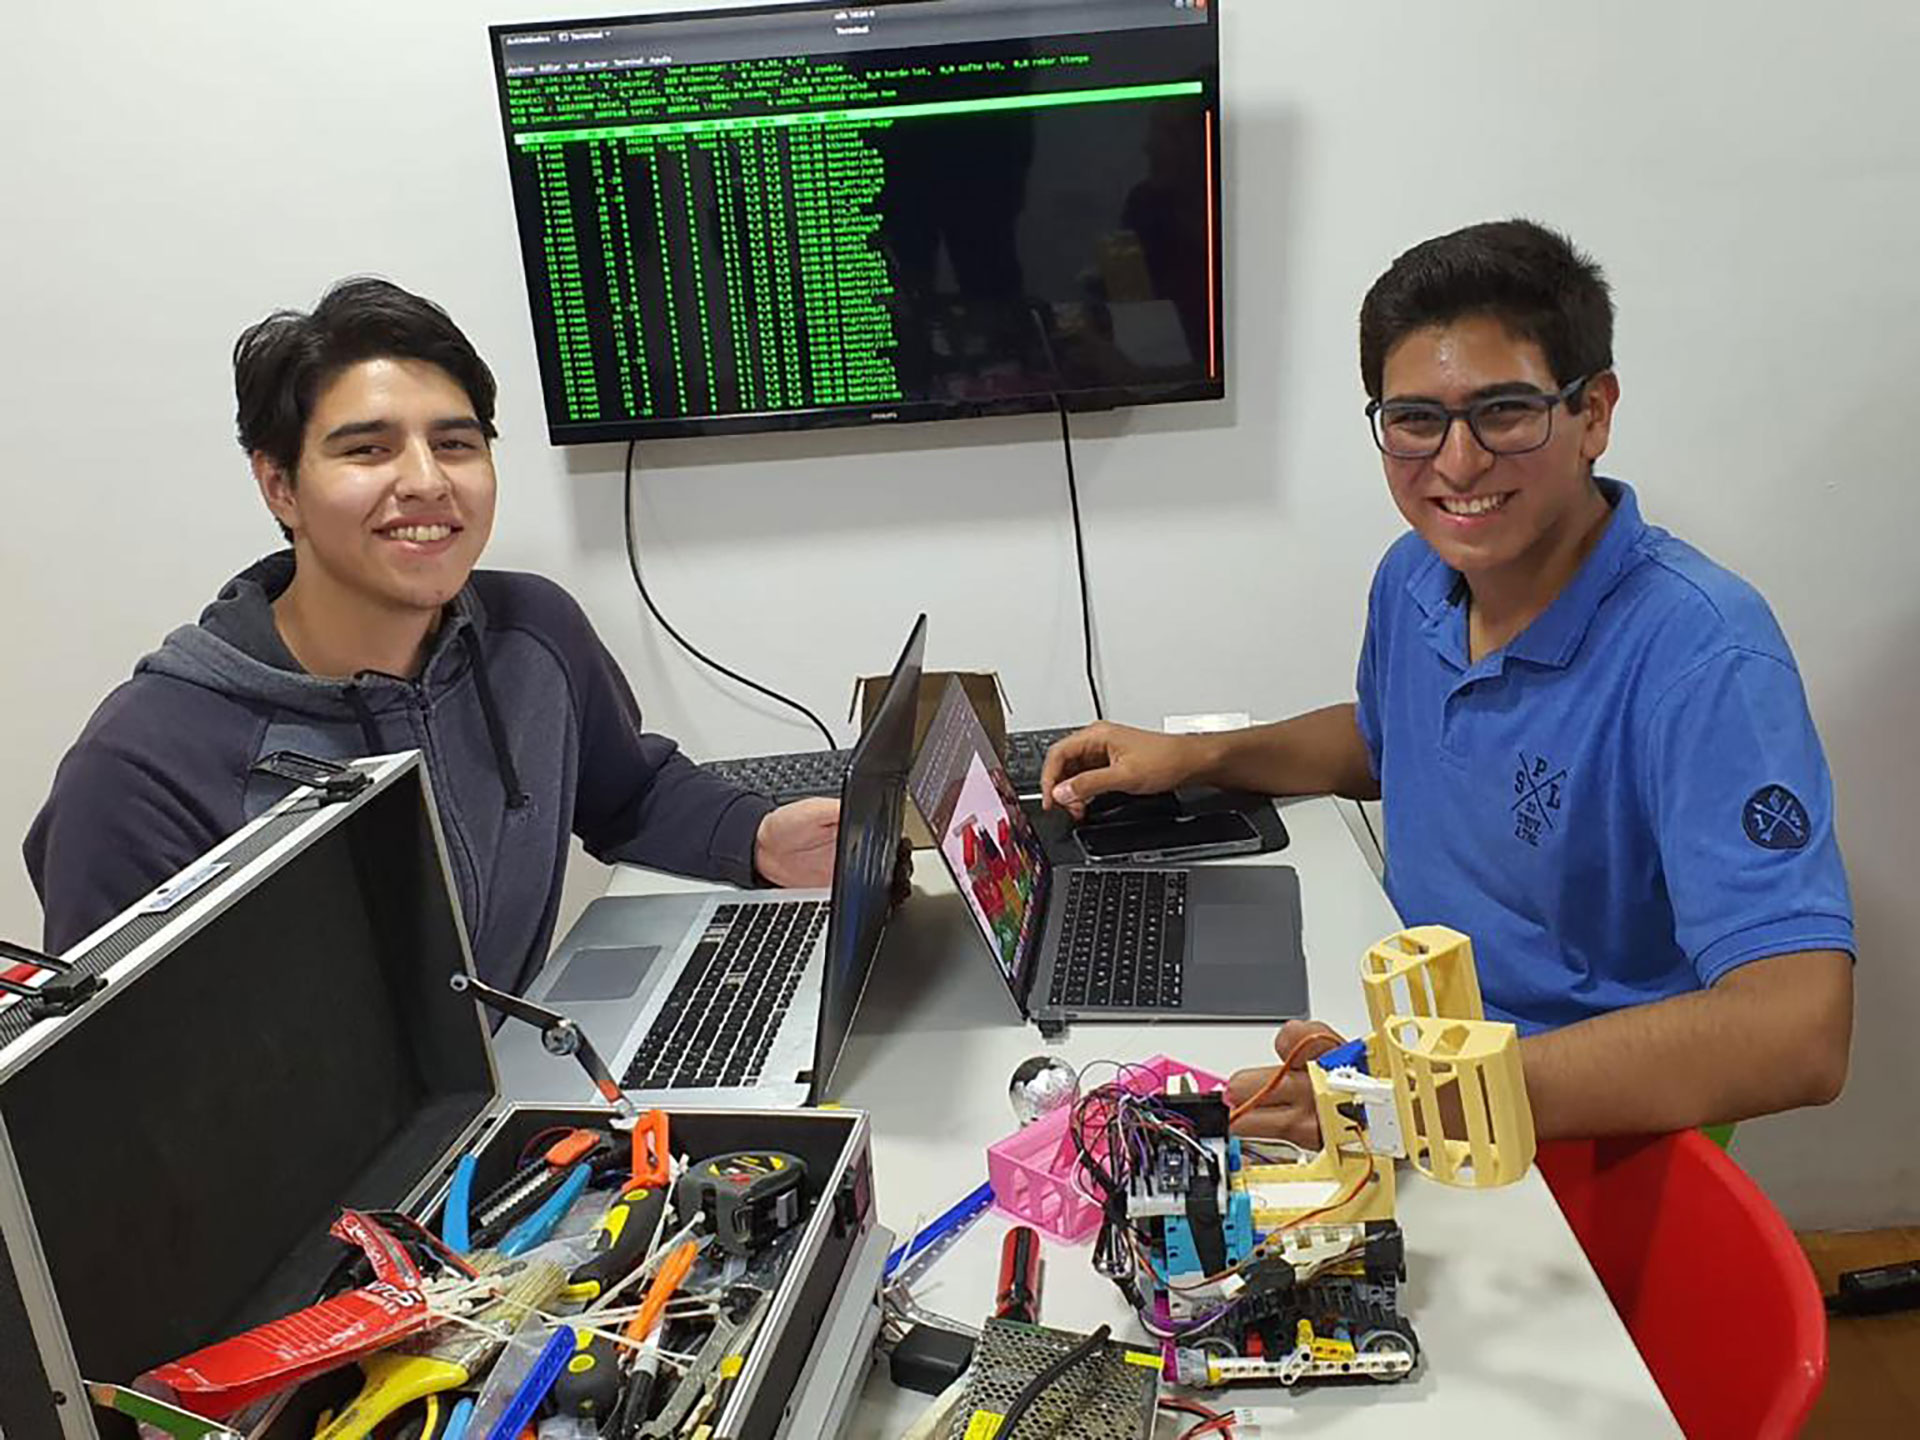 Joaquín Argañaraz y Joaquín Rodríguez, el equipo de robótica física que diseñó, fabricó y construyó un robot de rescate